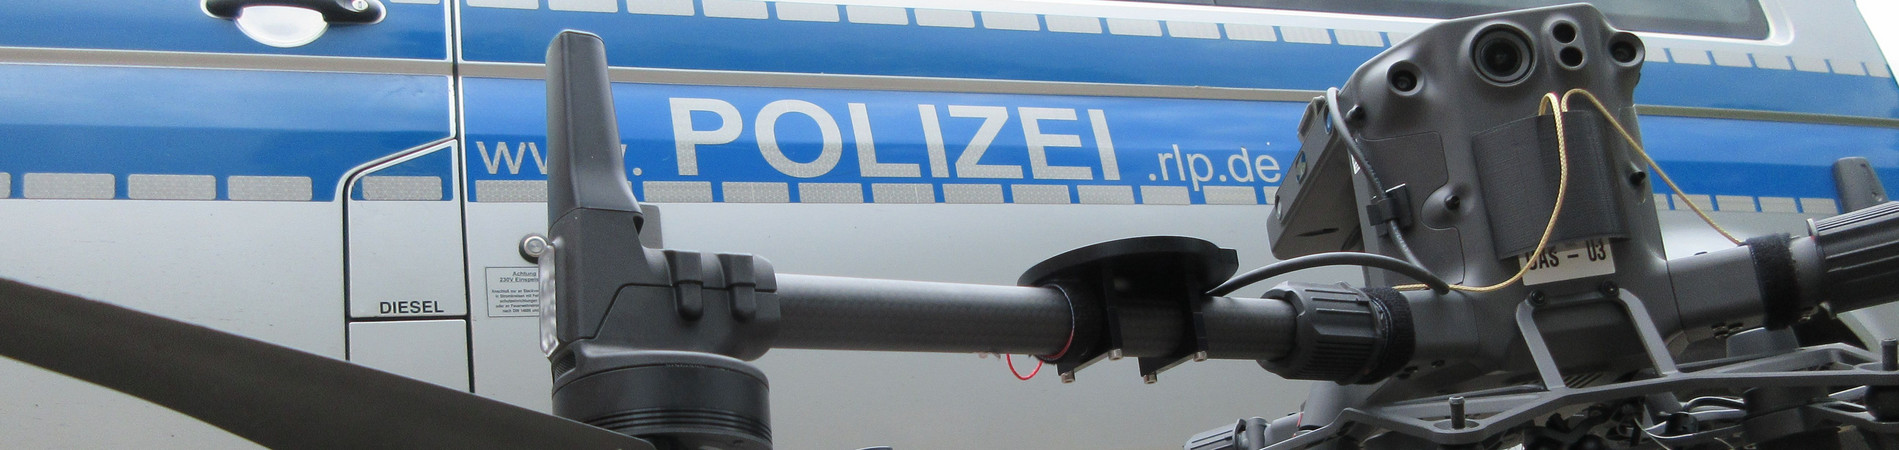 Drohne vor Polizeifahrzeug